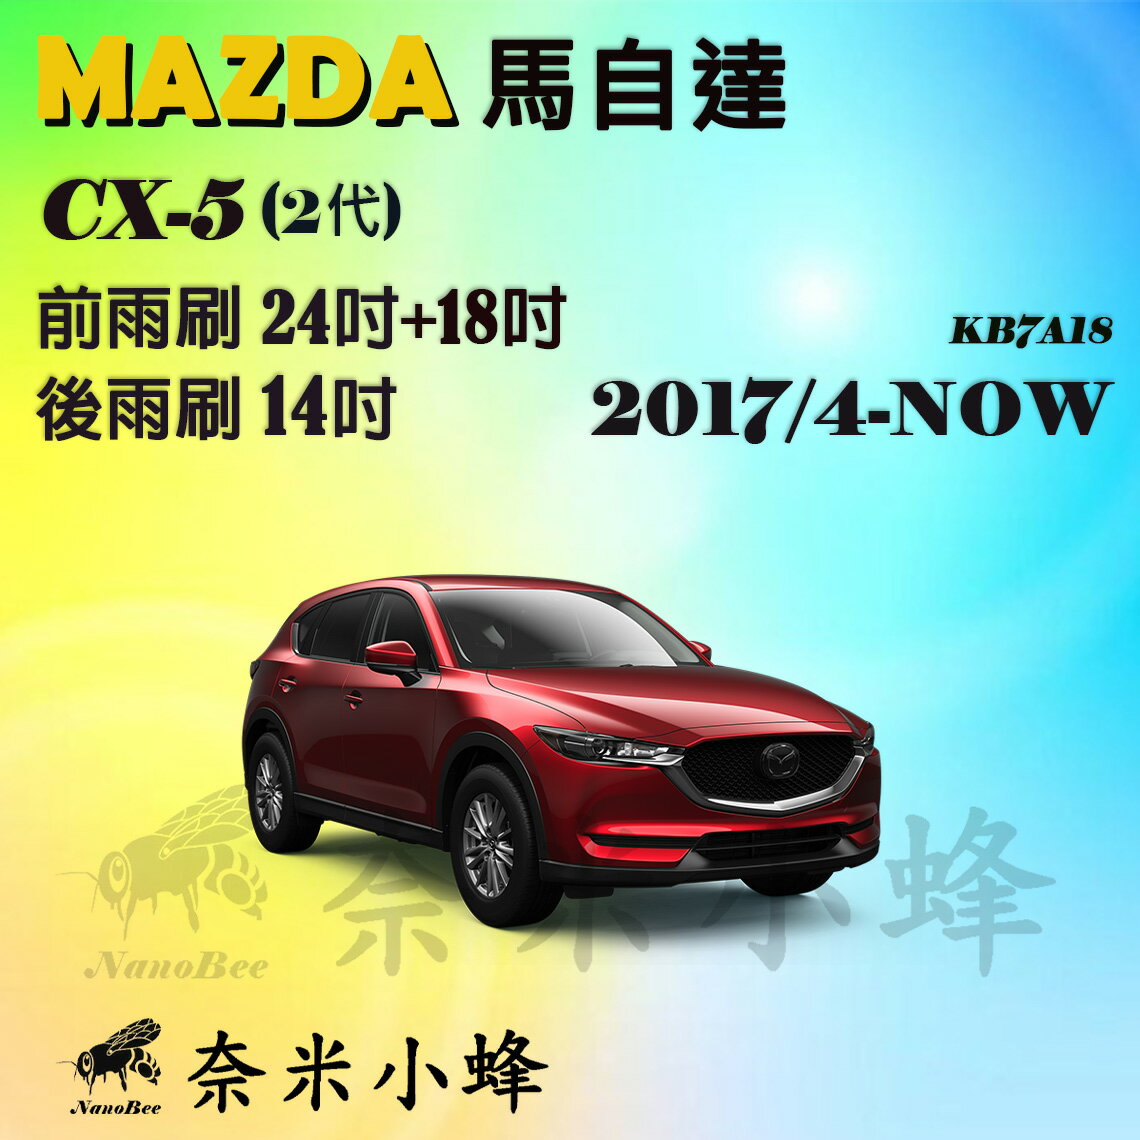 【奈米小蜂】MAZDA CX5/CX-5 2017/4-NOW雨刷 CX5後雨刷 CX-5矽膠雨刷 矽膠鍍膜 軟骨雨刷